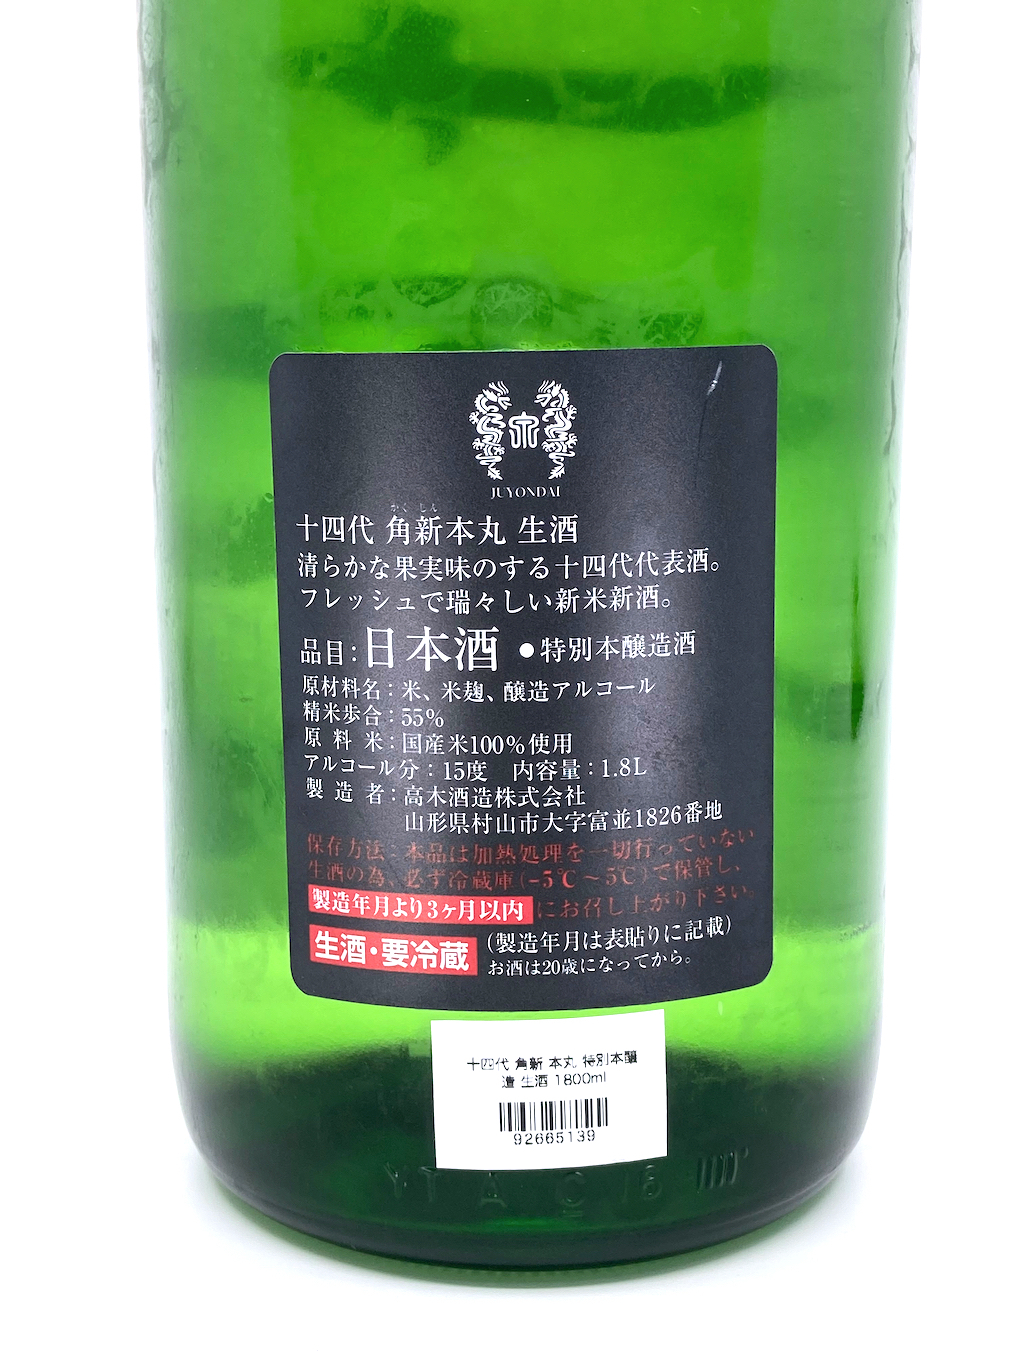 十四代角新本丸特別本釀造生酒1800ml